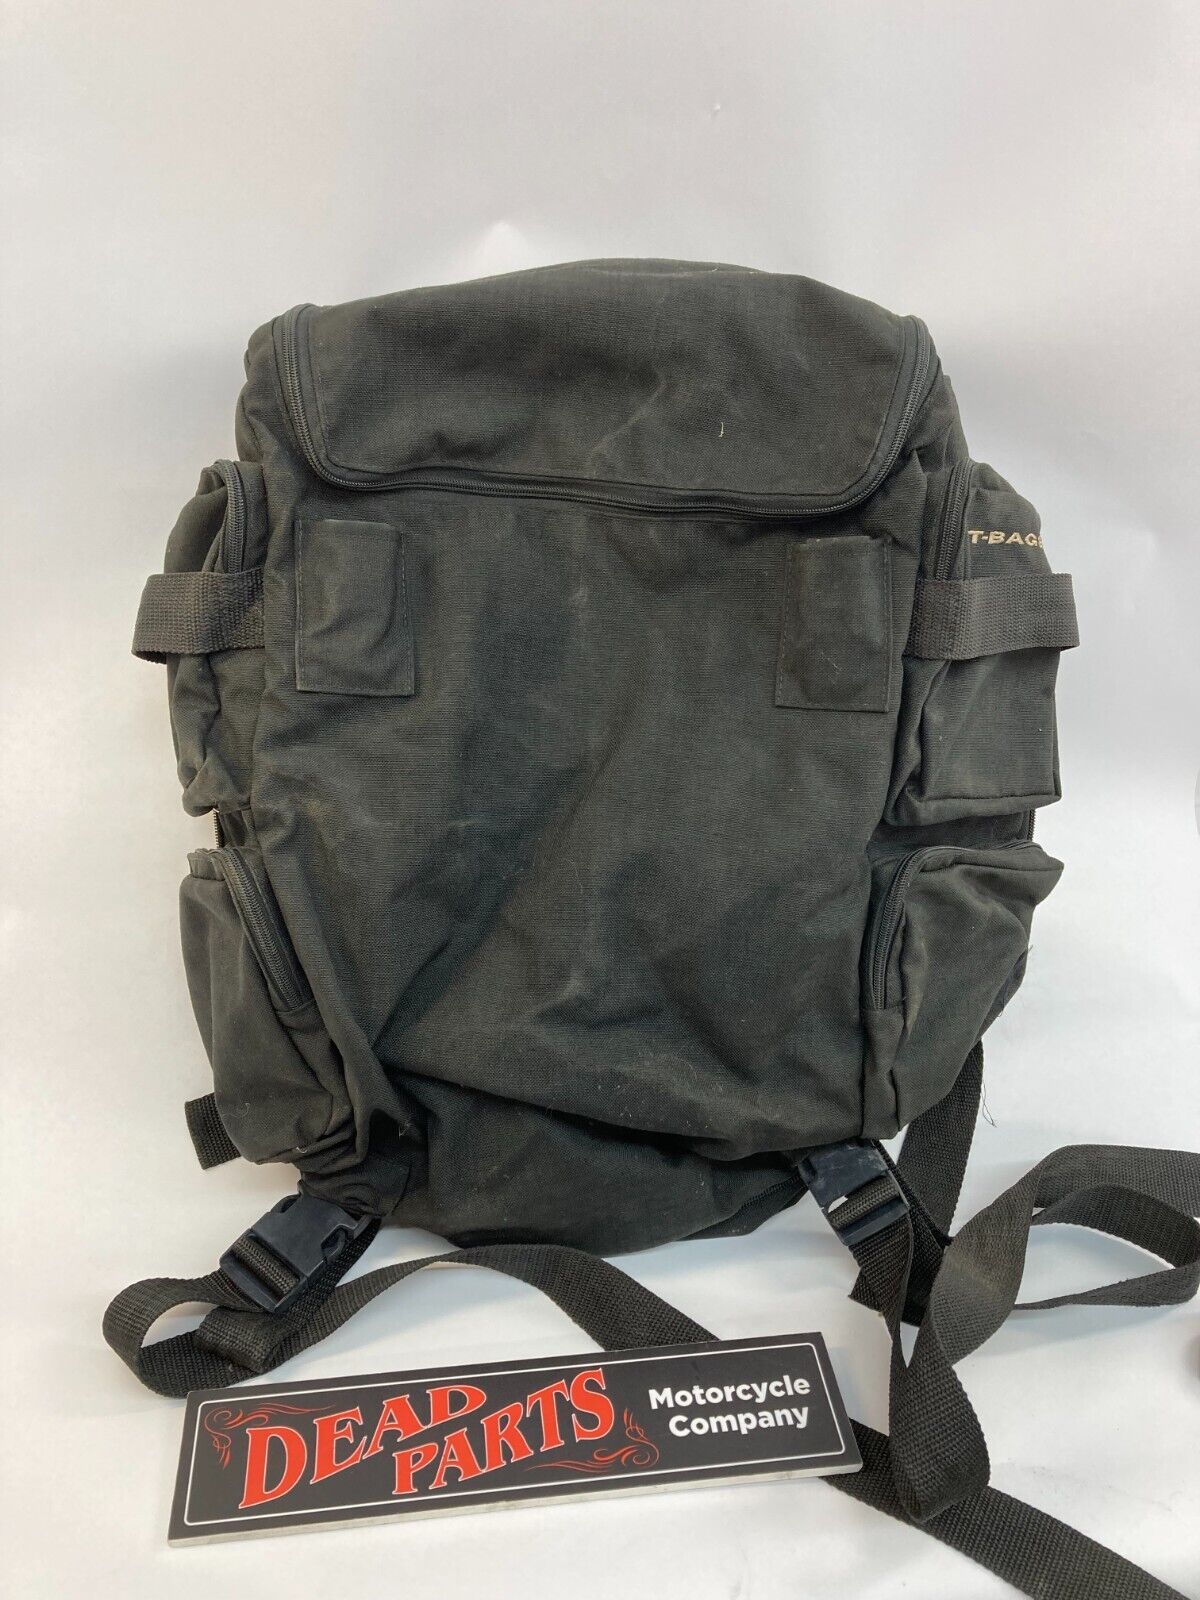 Harley T-Bags nylon large sissybar backrest travel duffle luggage bag